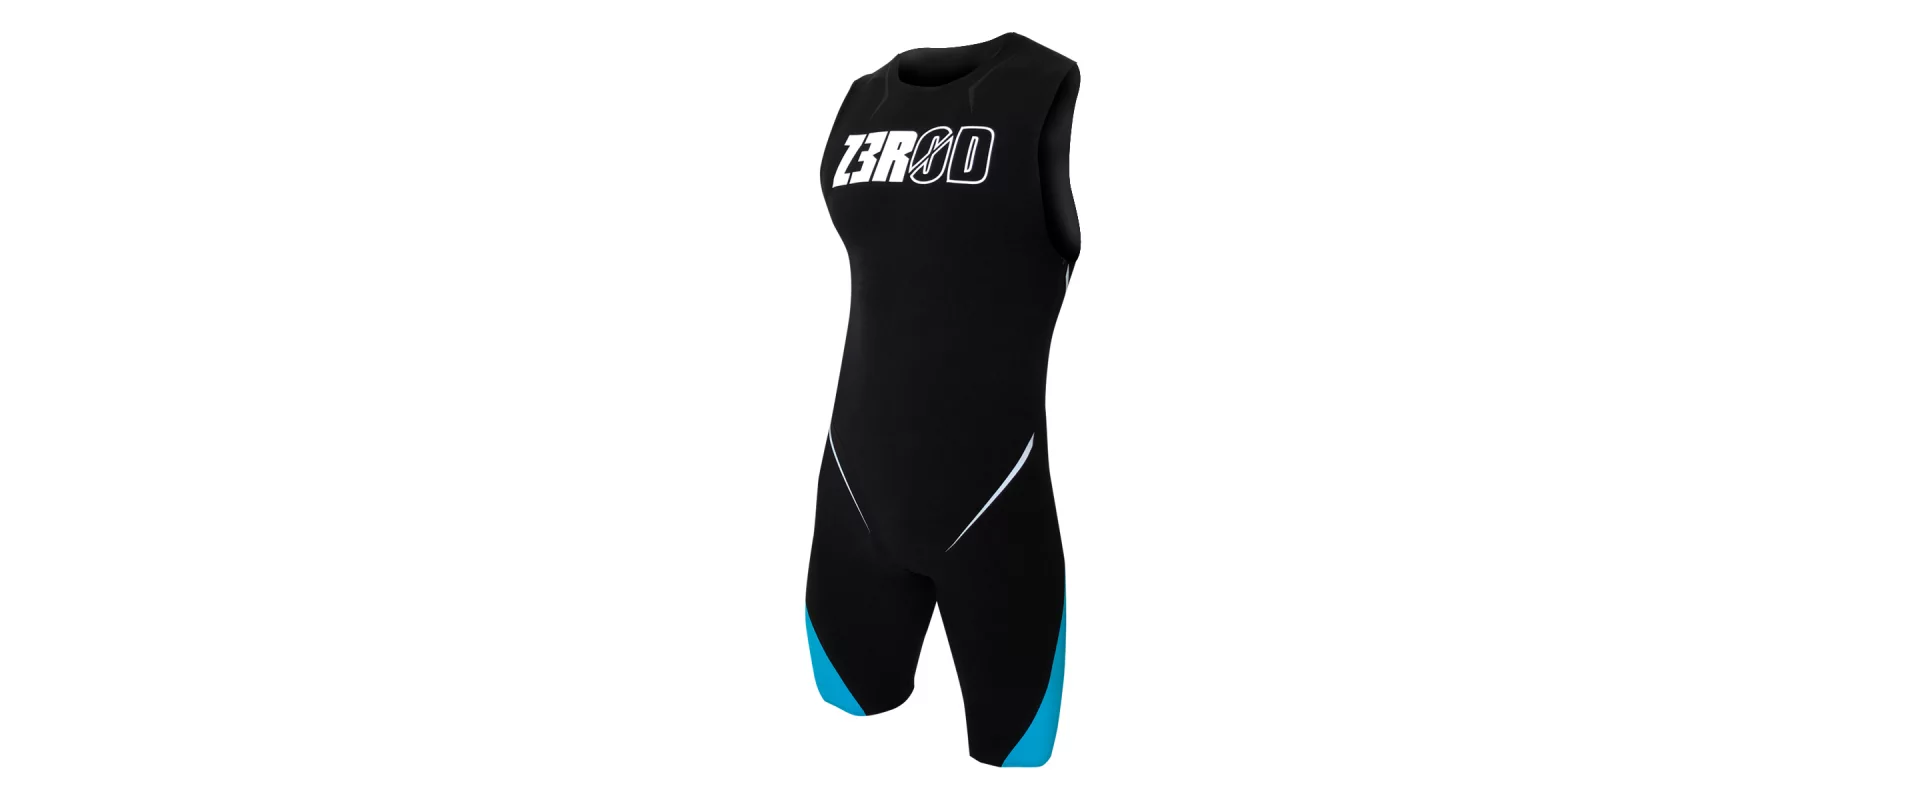 Z3R0D Elite Speedsuit / Мужской стартовый костюм без рукавов фото 2